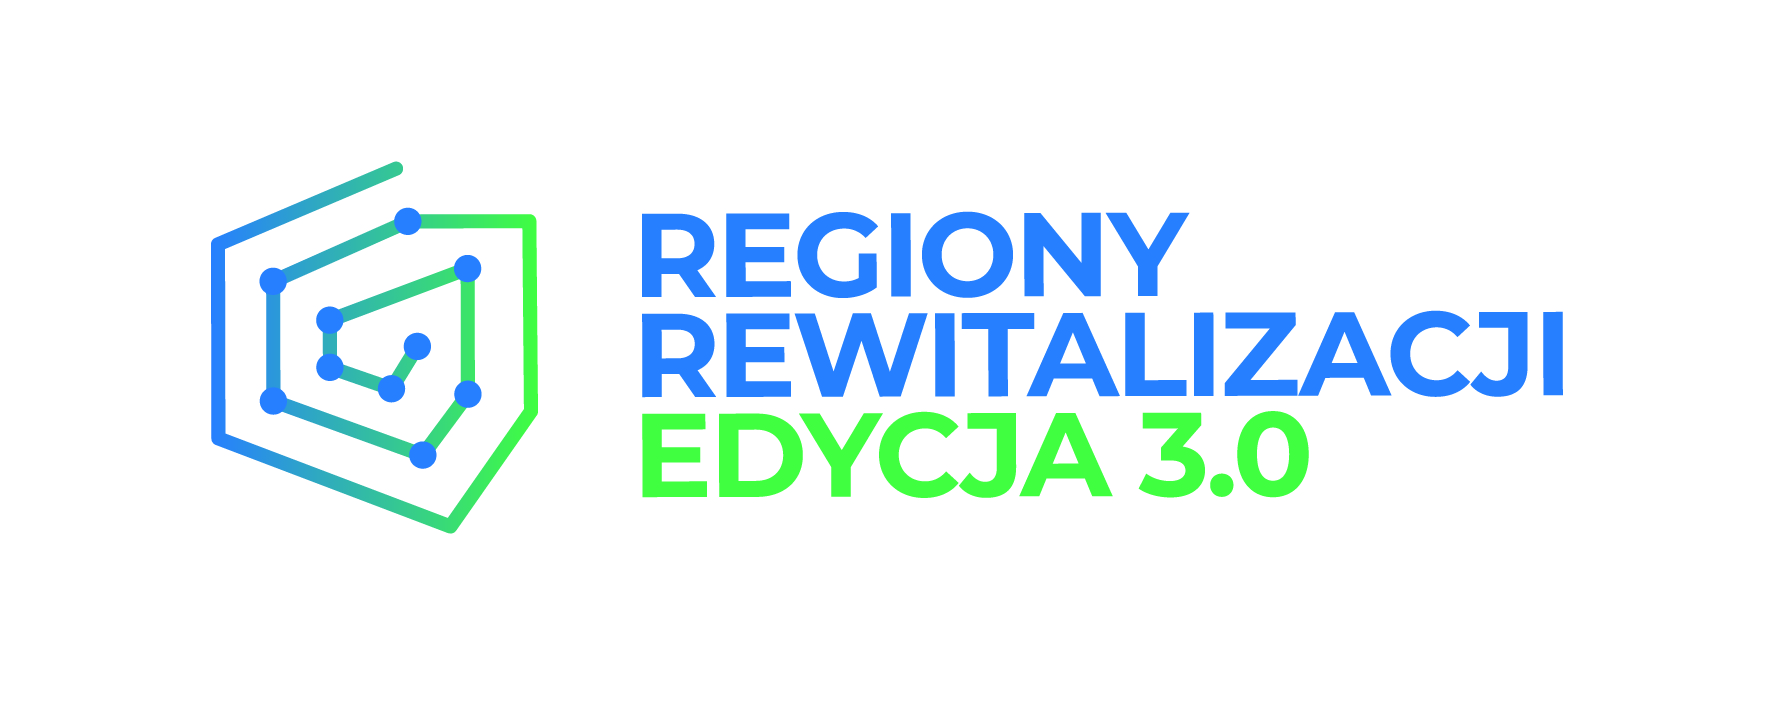 Nagłówek zawierający barwny logotyp programu Regiony Rewitalizacji Edycja 3.0